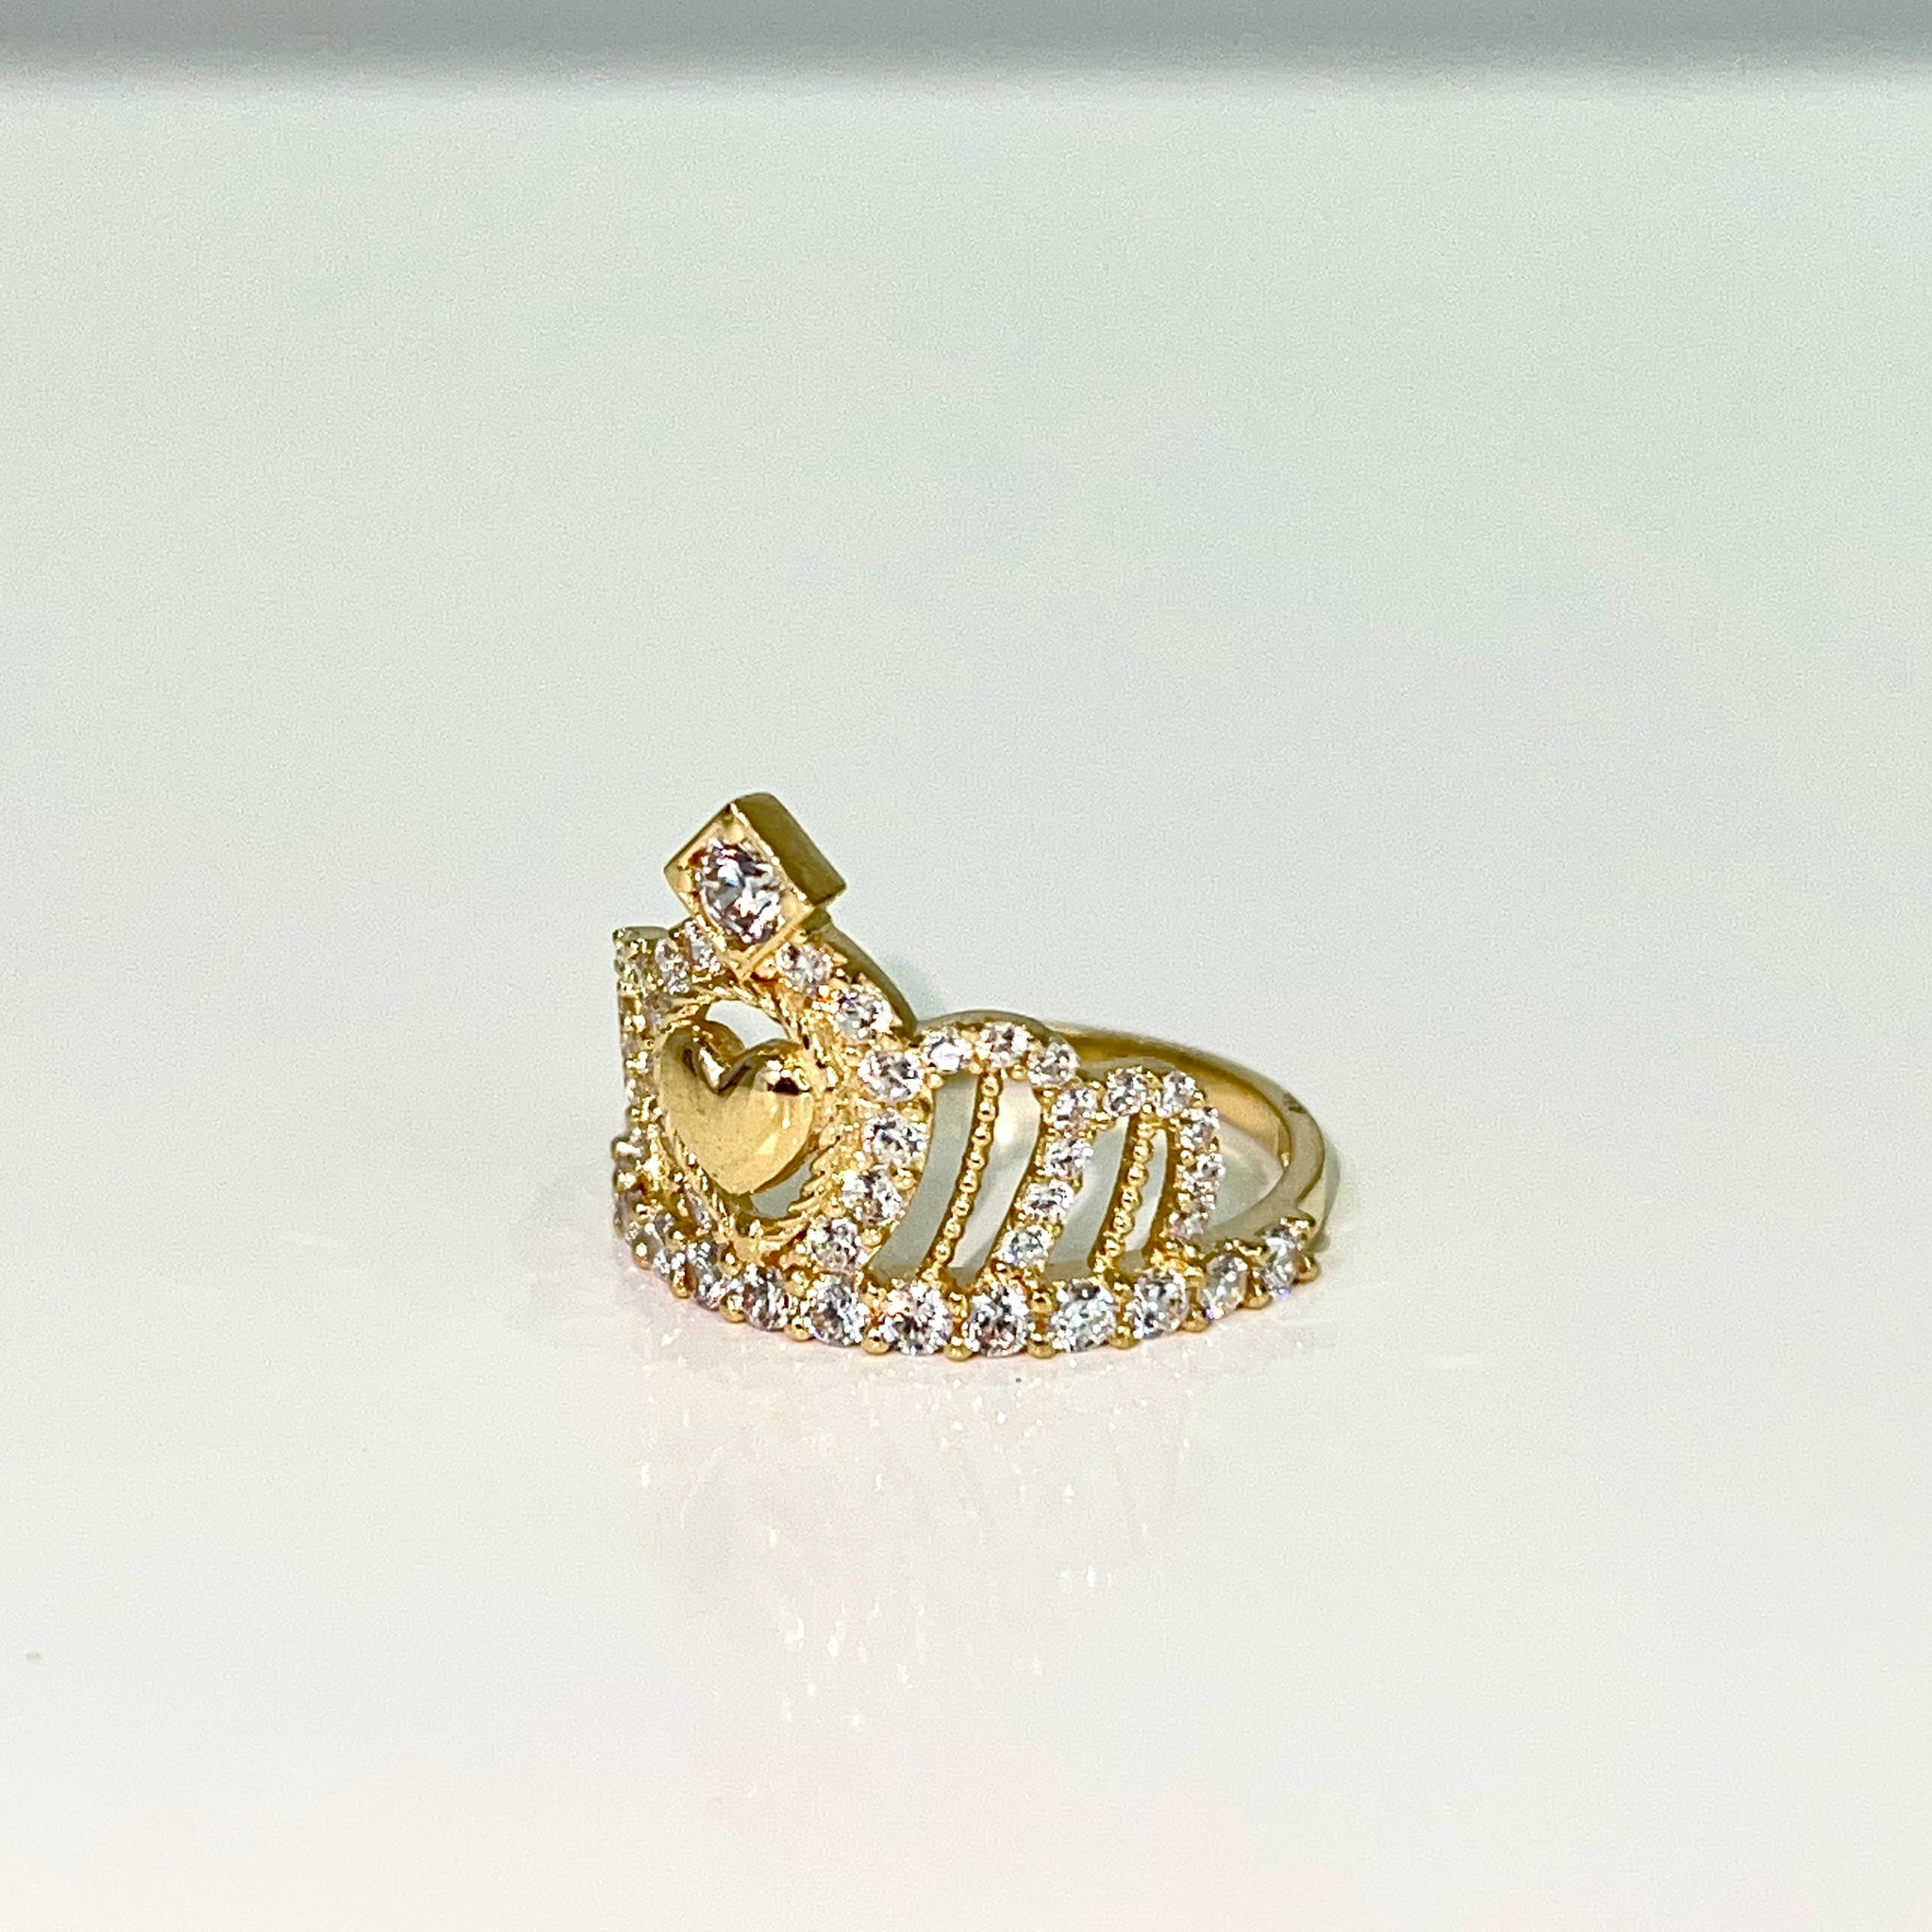 Queen's Crown Ladies Ring - 18 carat gold